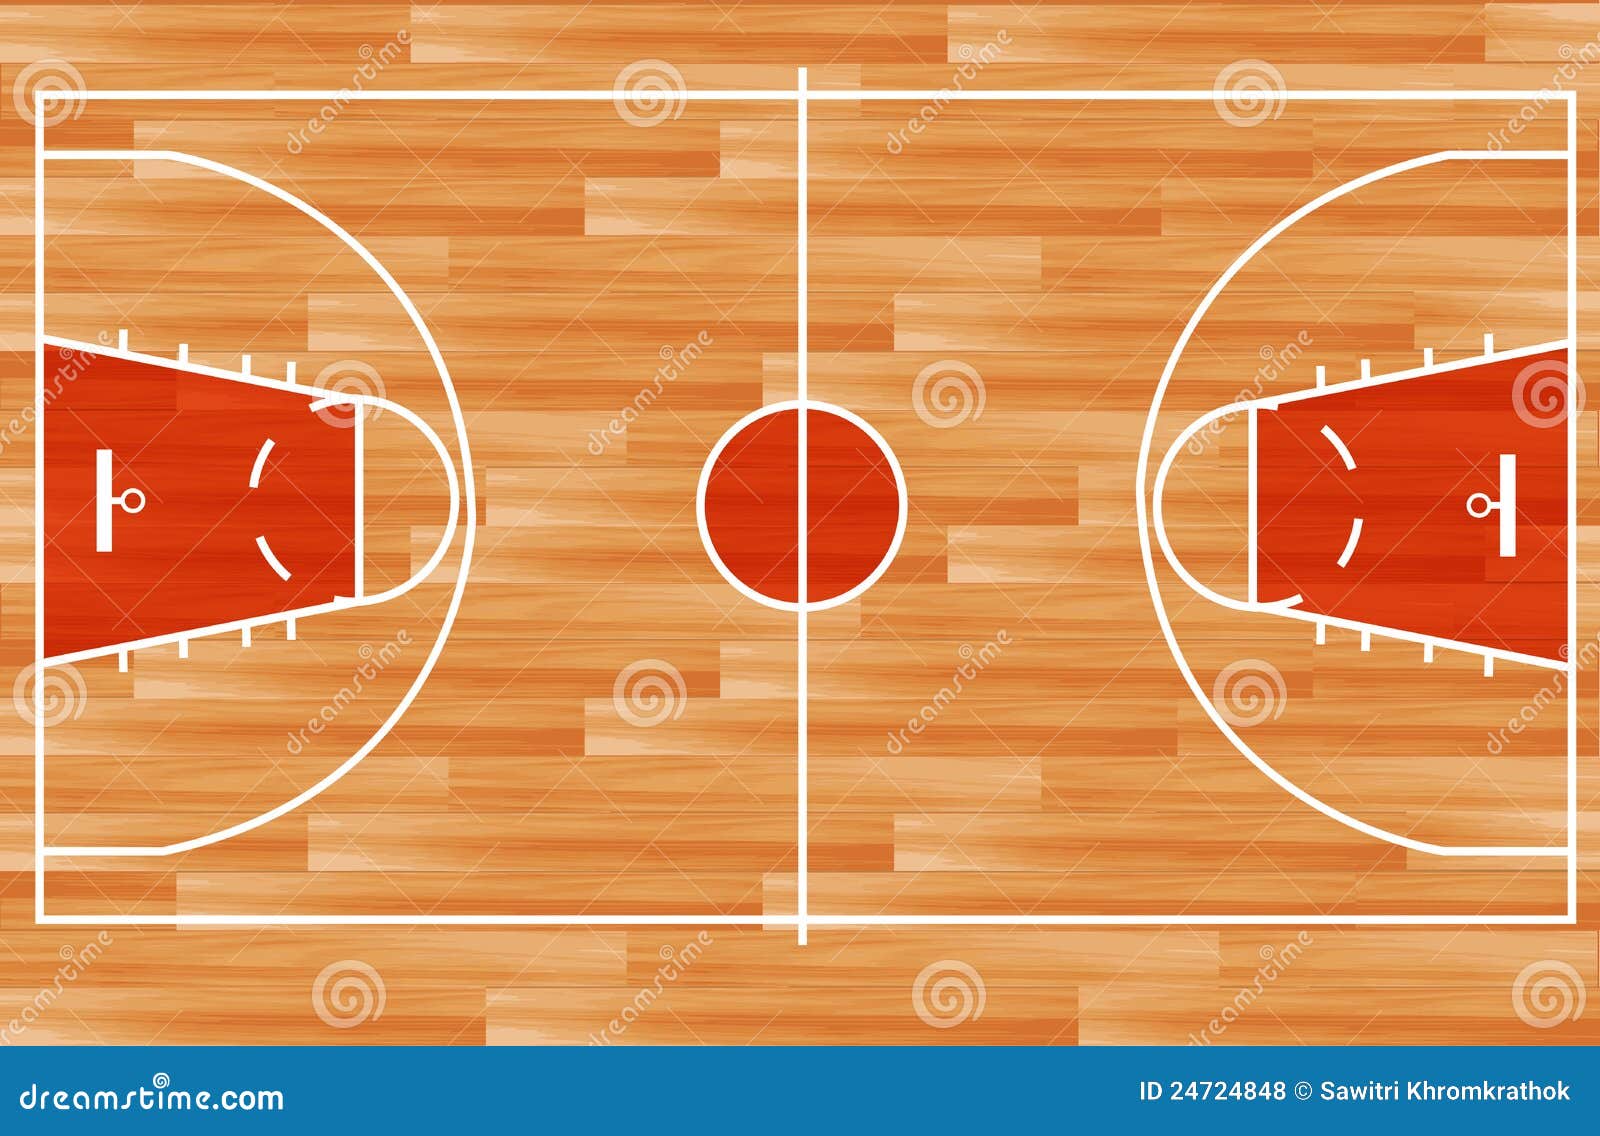 Basketball Half Court Template Clipart Best Clipart Best Vector